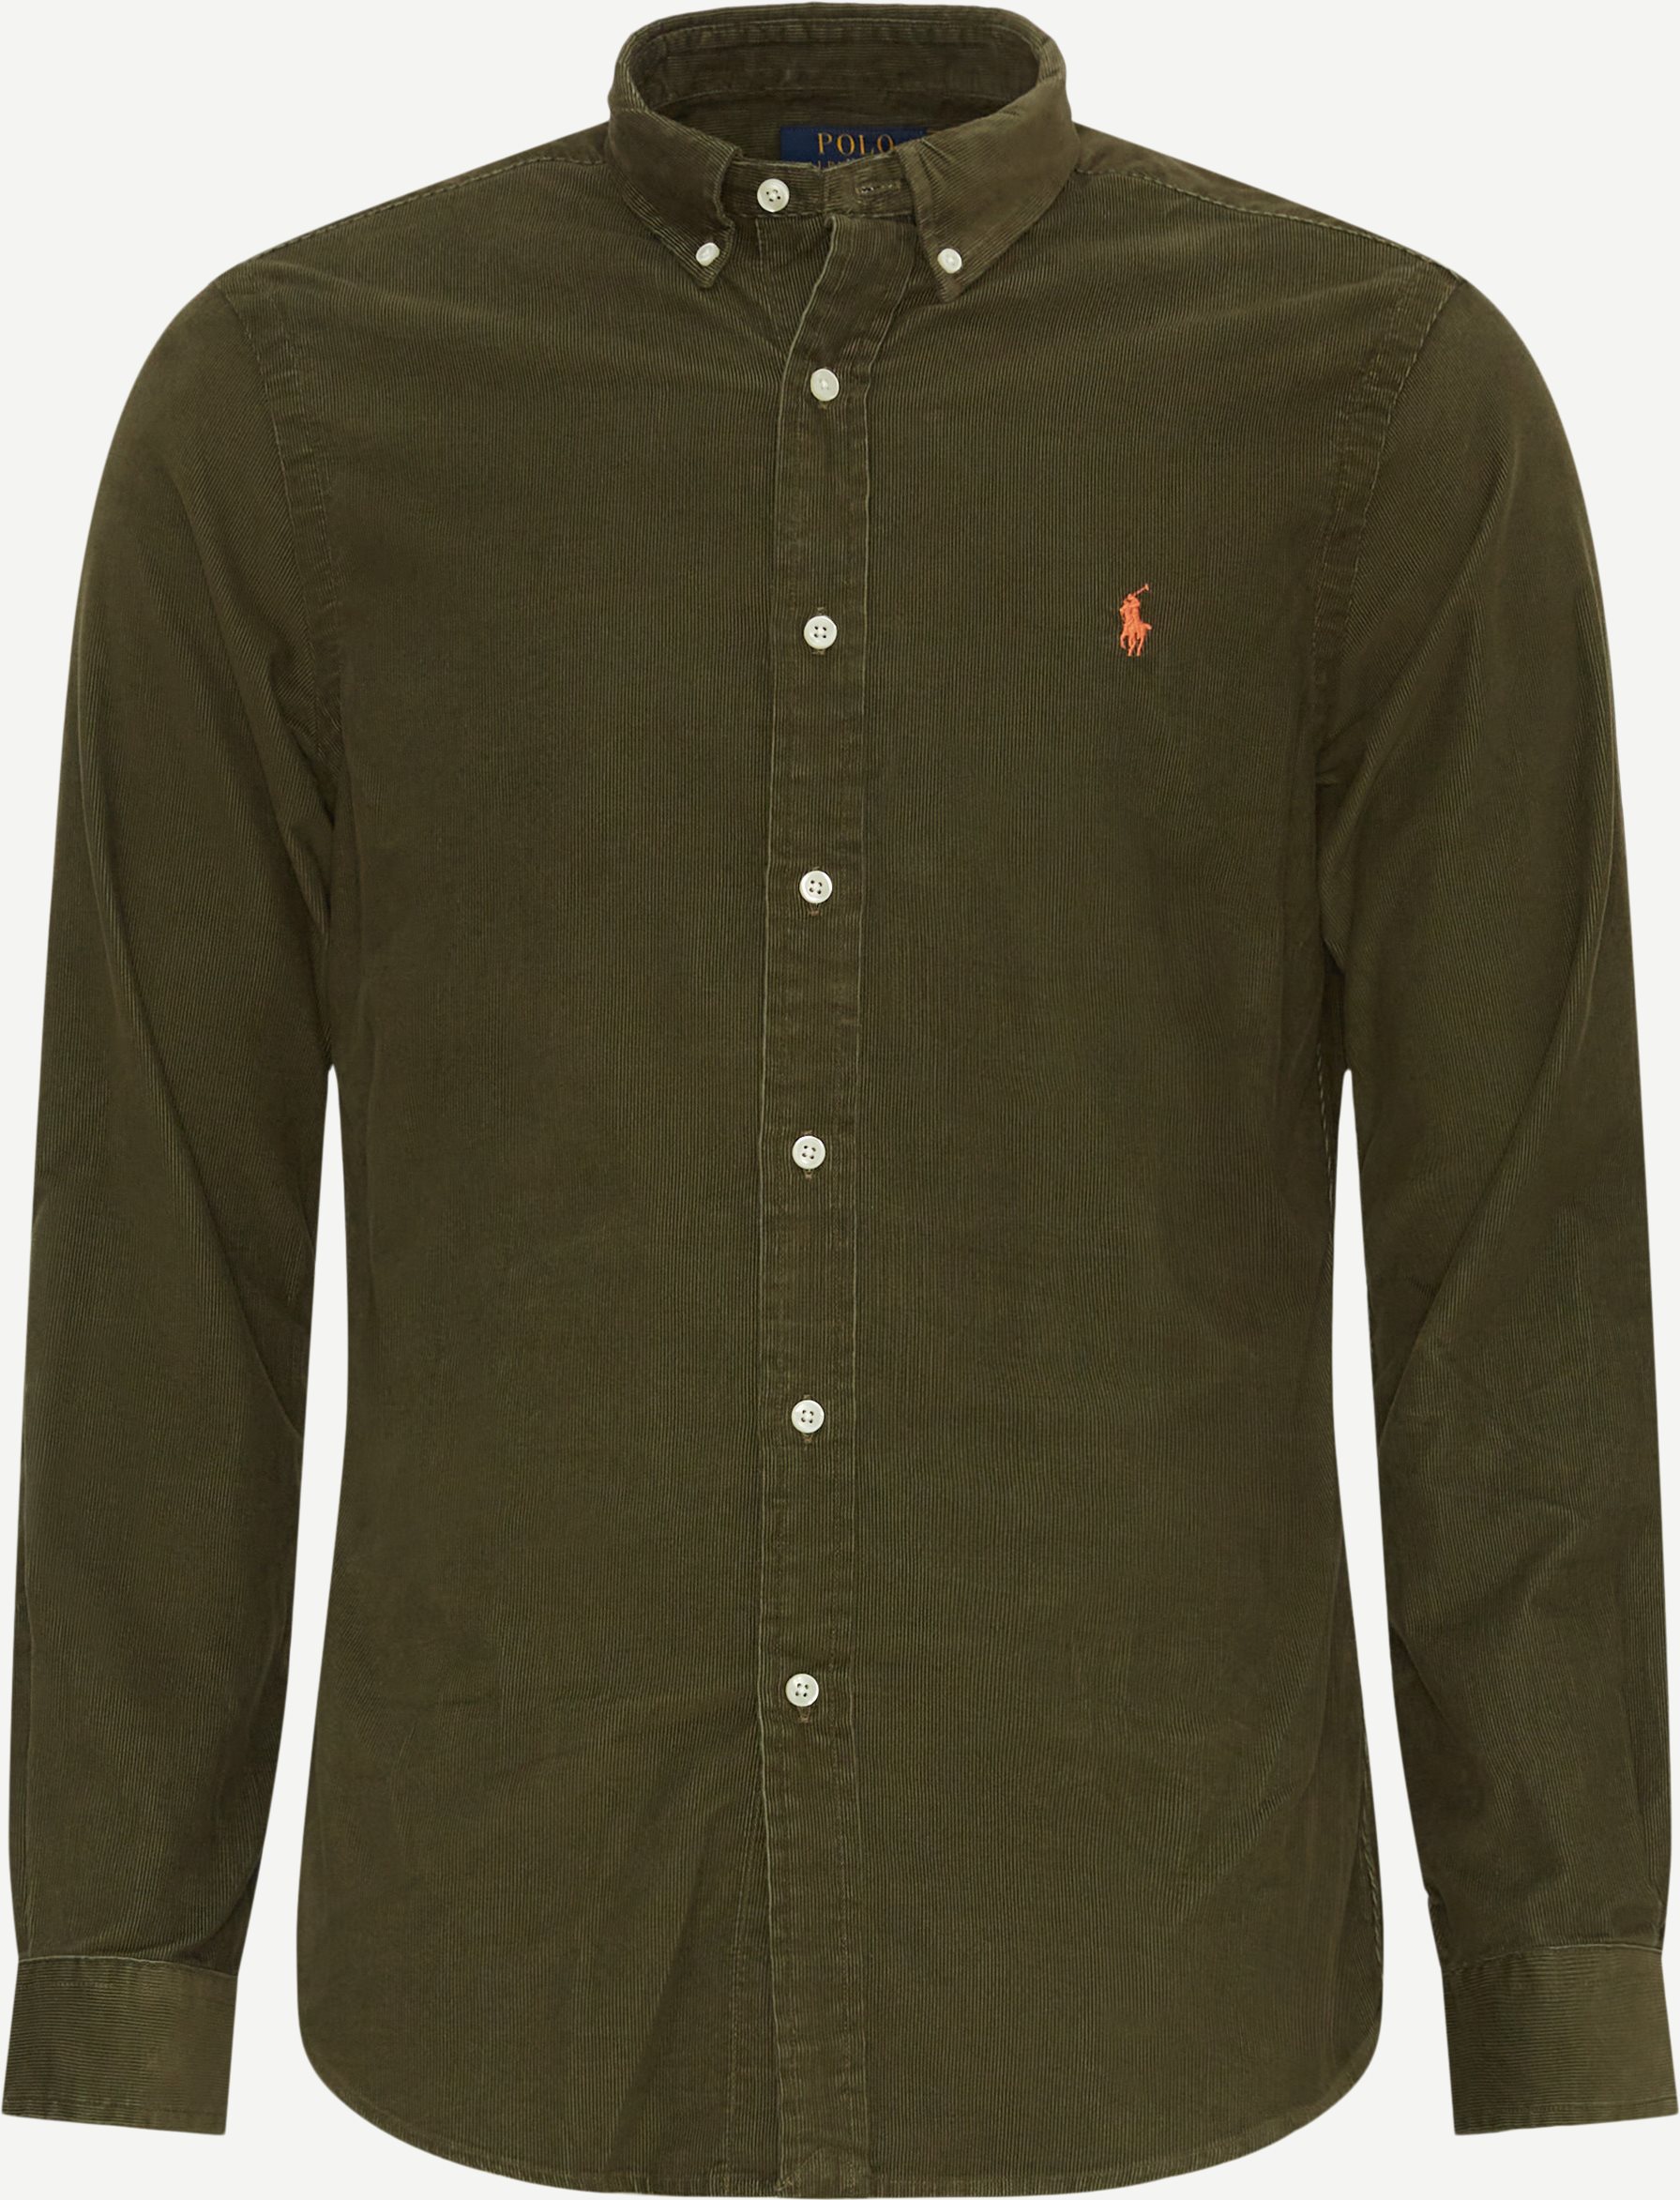 Polo Ralph Lauren Shirts 710818761 2303 Green